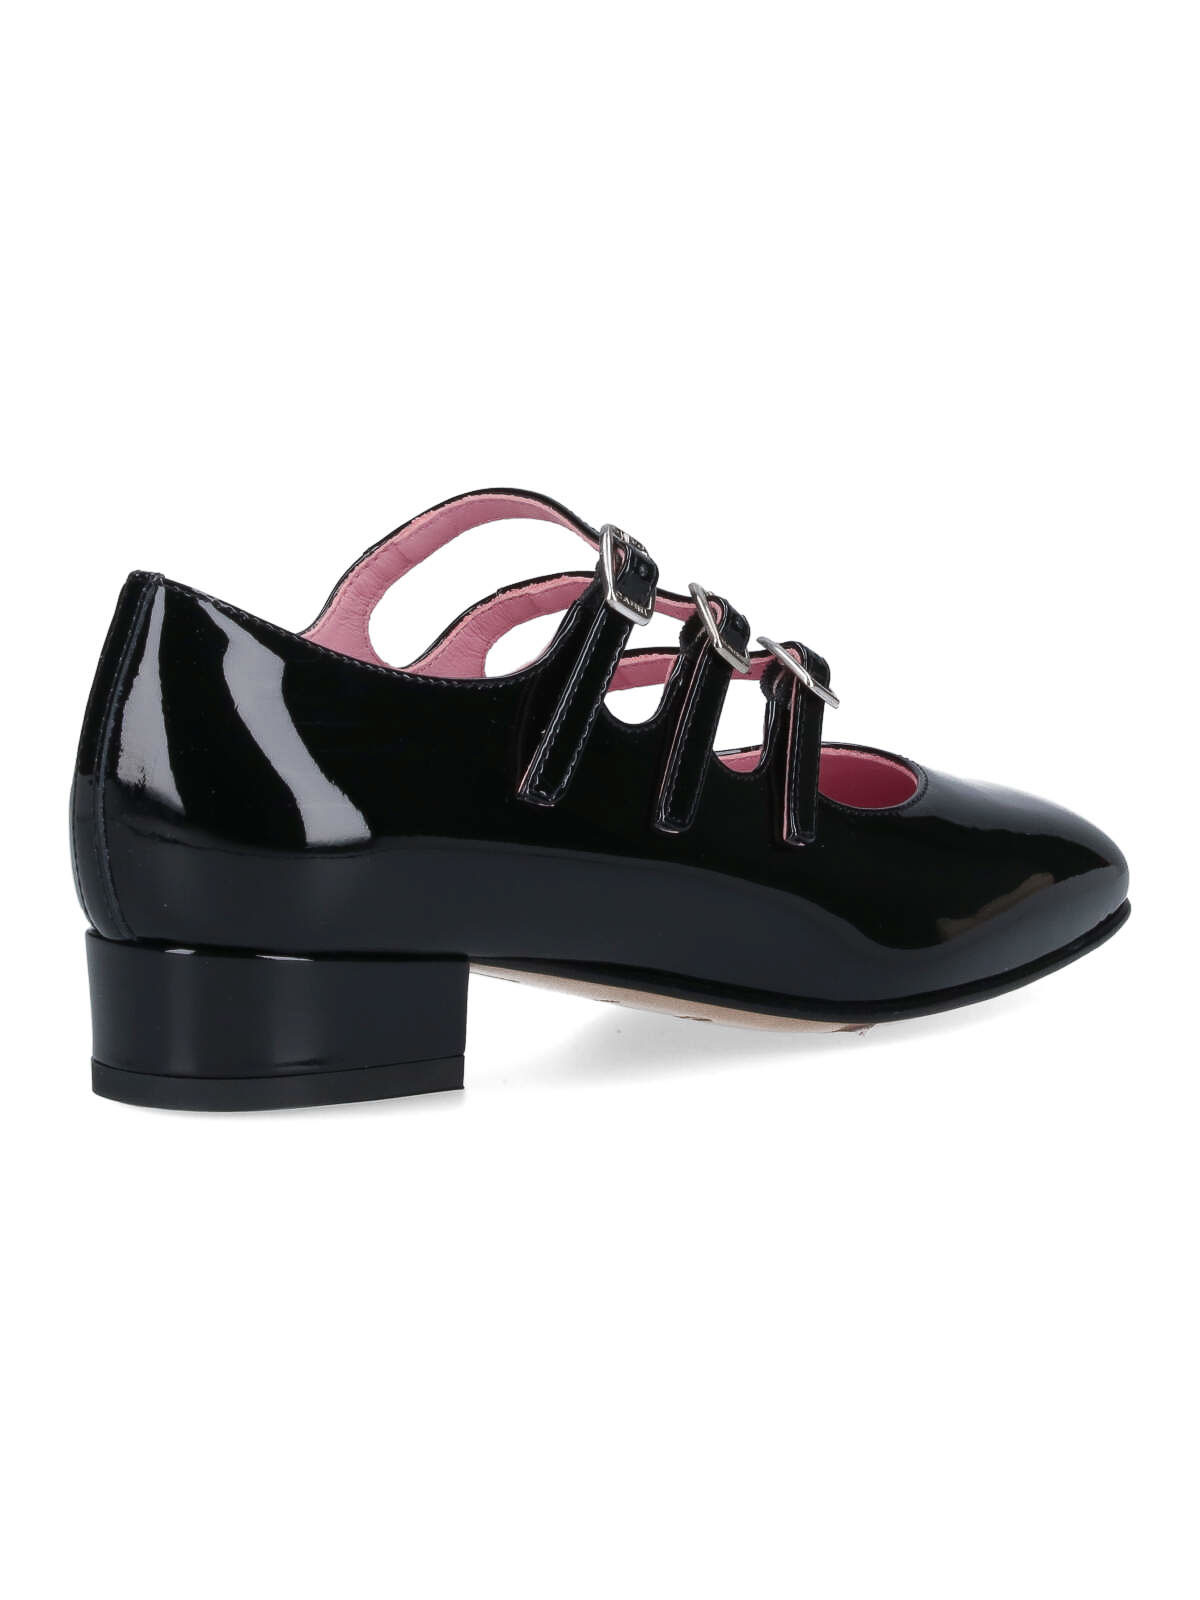 Shop Carel Paris Zapatos De Salón - Ariana In Black